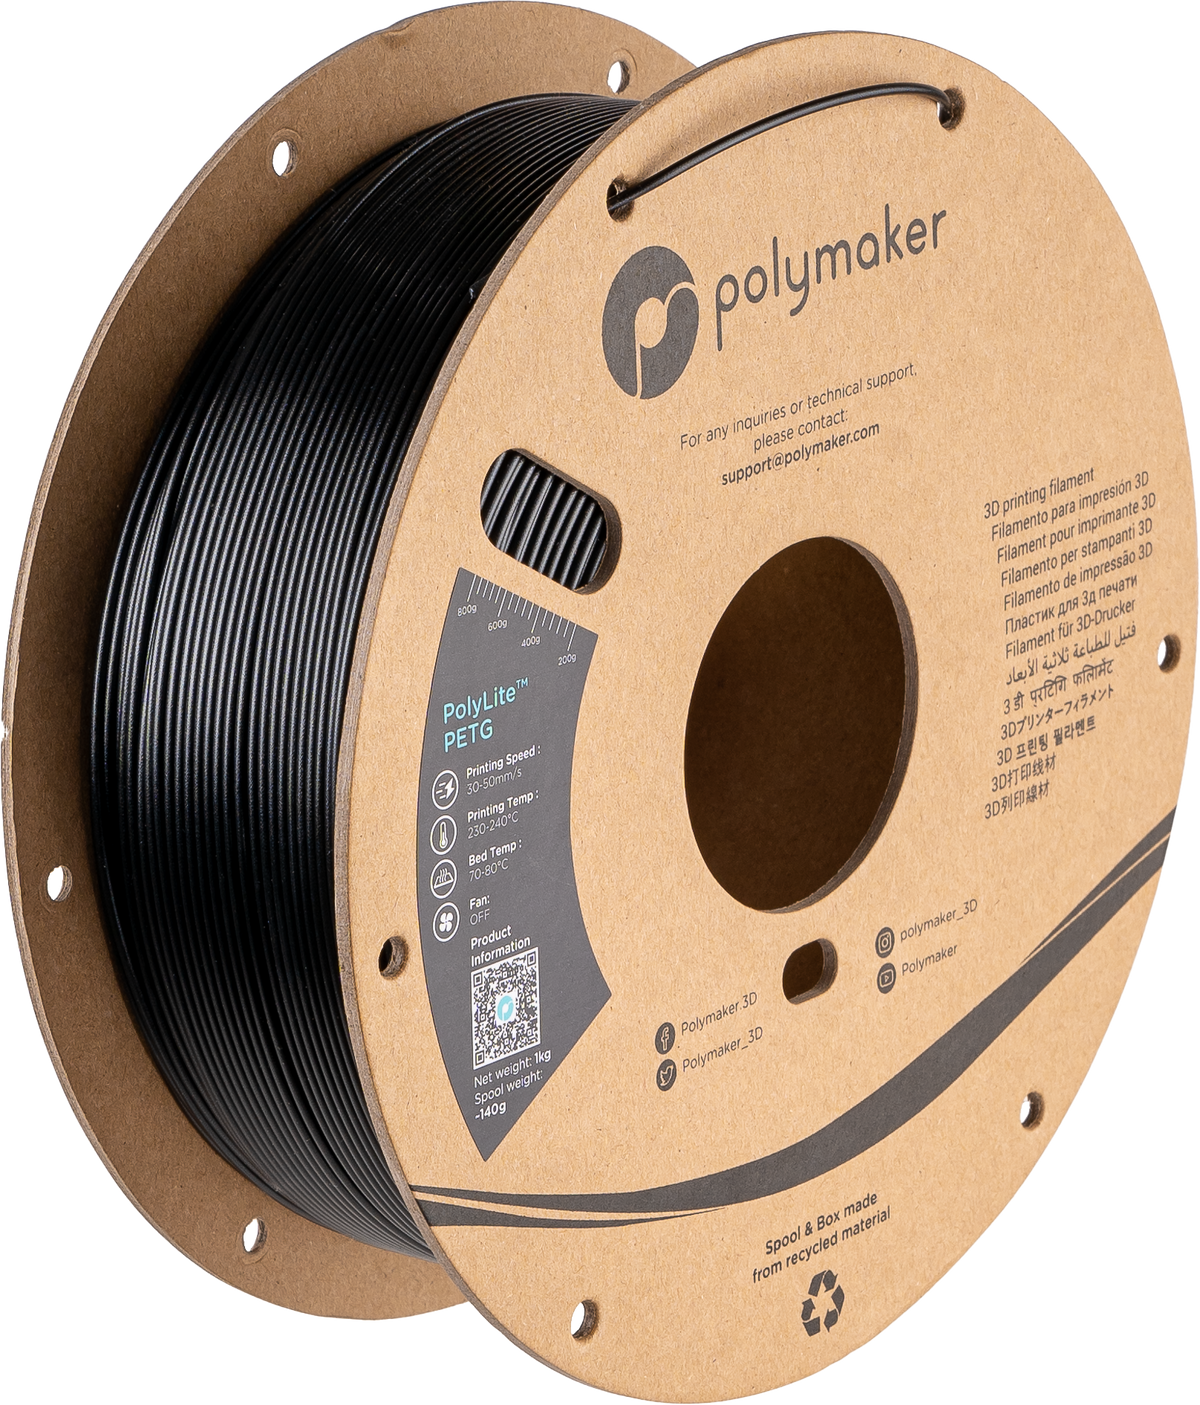 FUNDGRUBE - Polymaker PolyLite™ PETG - Black [2.85mm] (29,90€/Kg) - Kat08